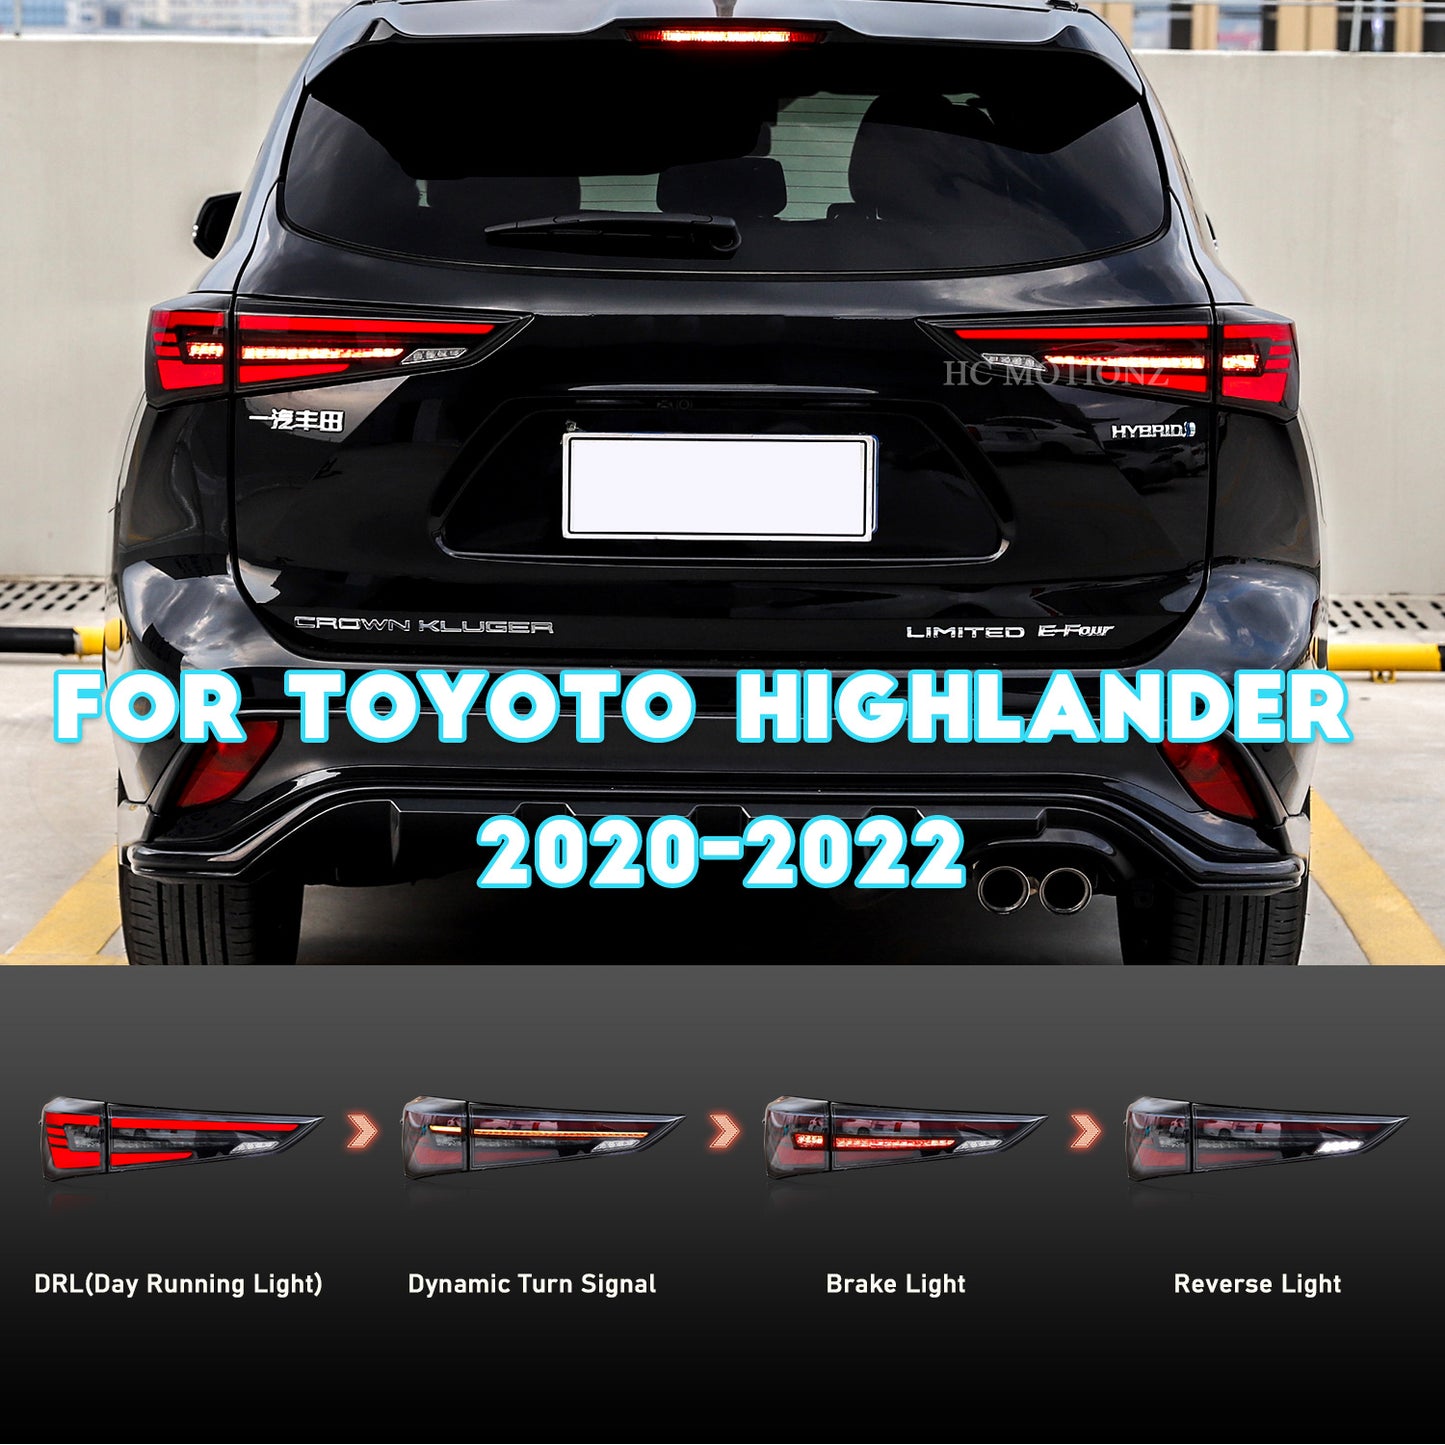 HCMOTION Gen 4 For Toyoto Highlander 2020-2022 LED Tail Lights